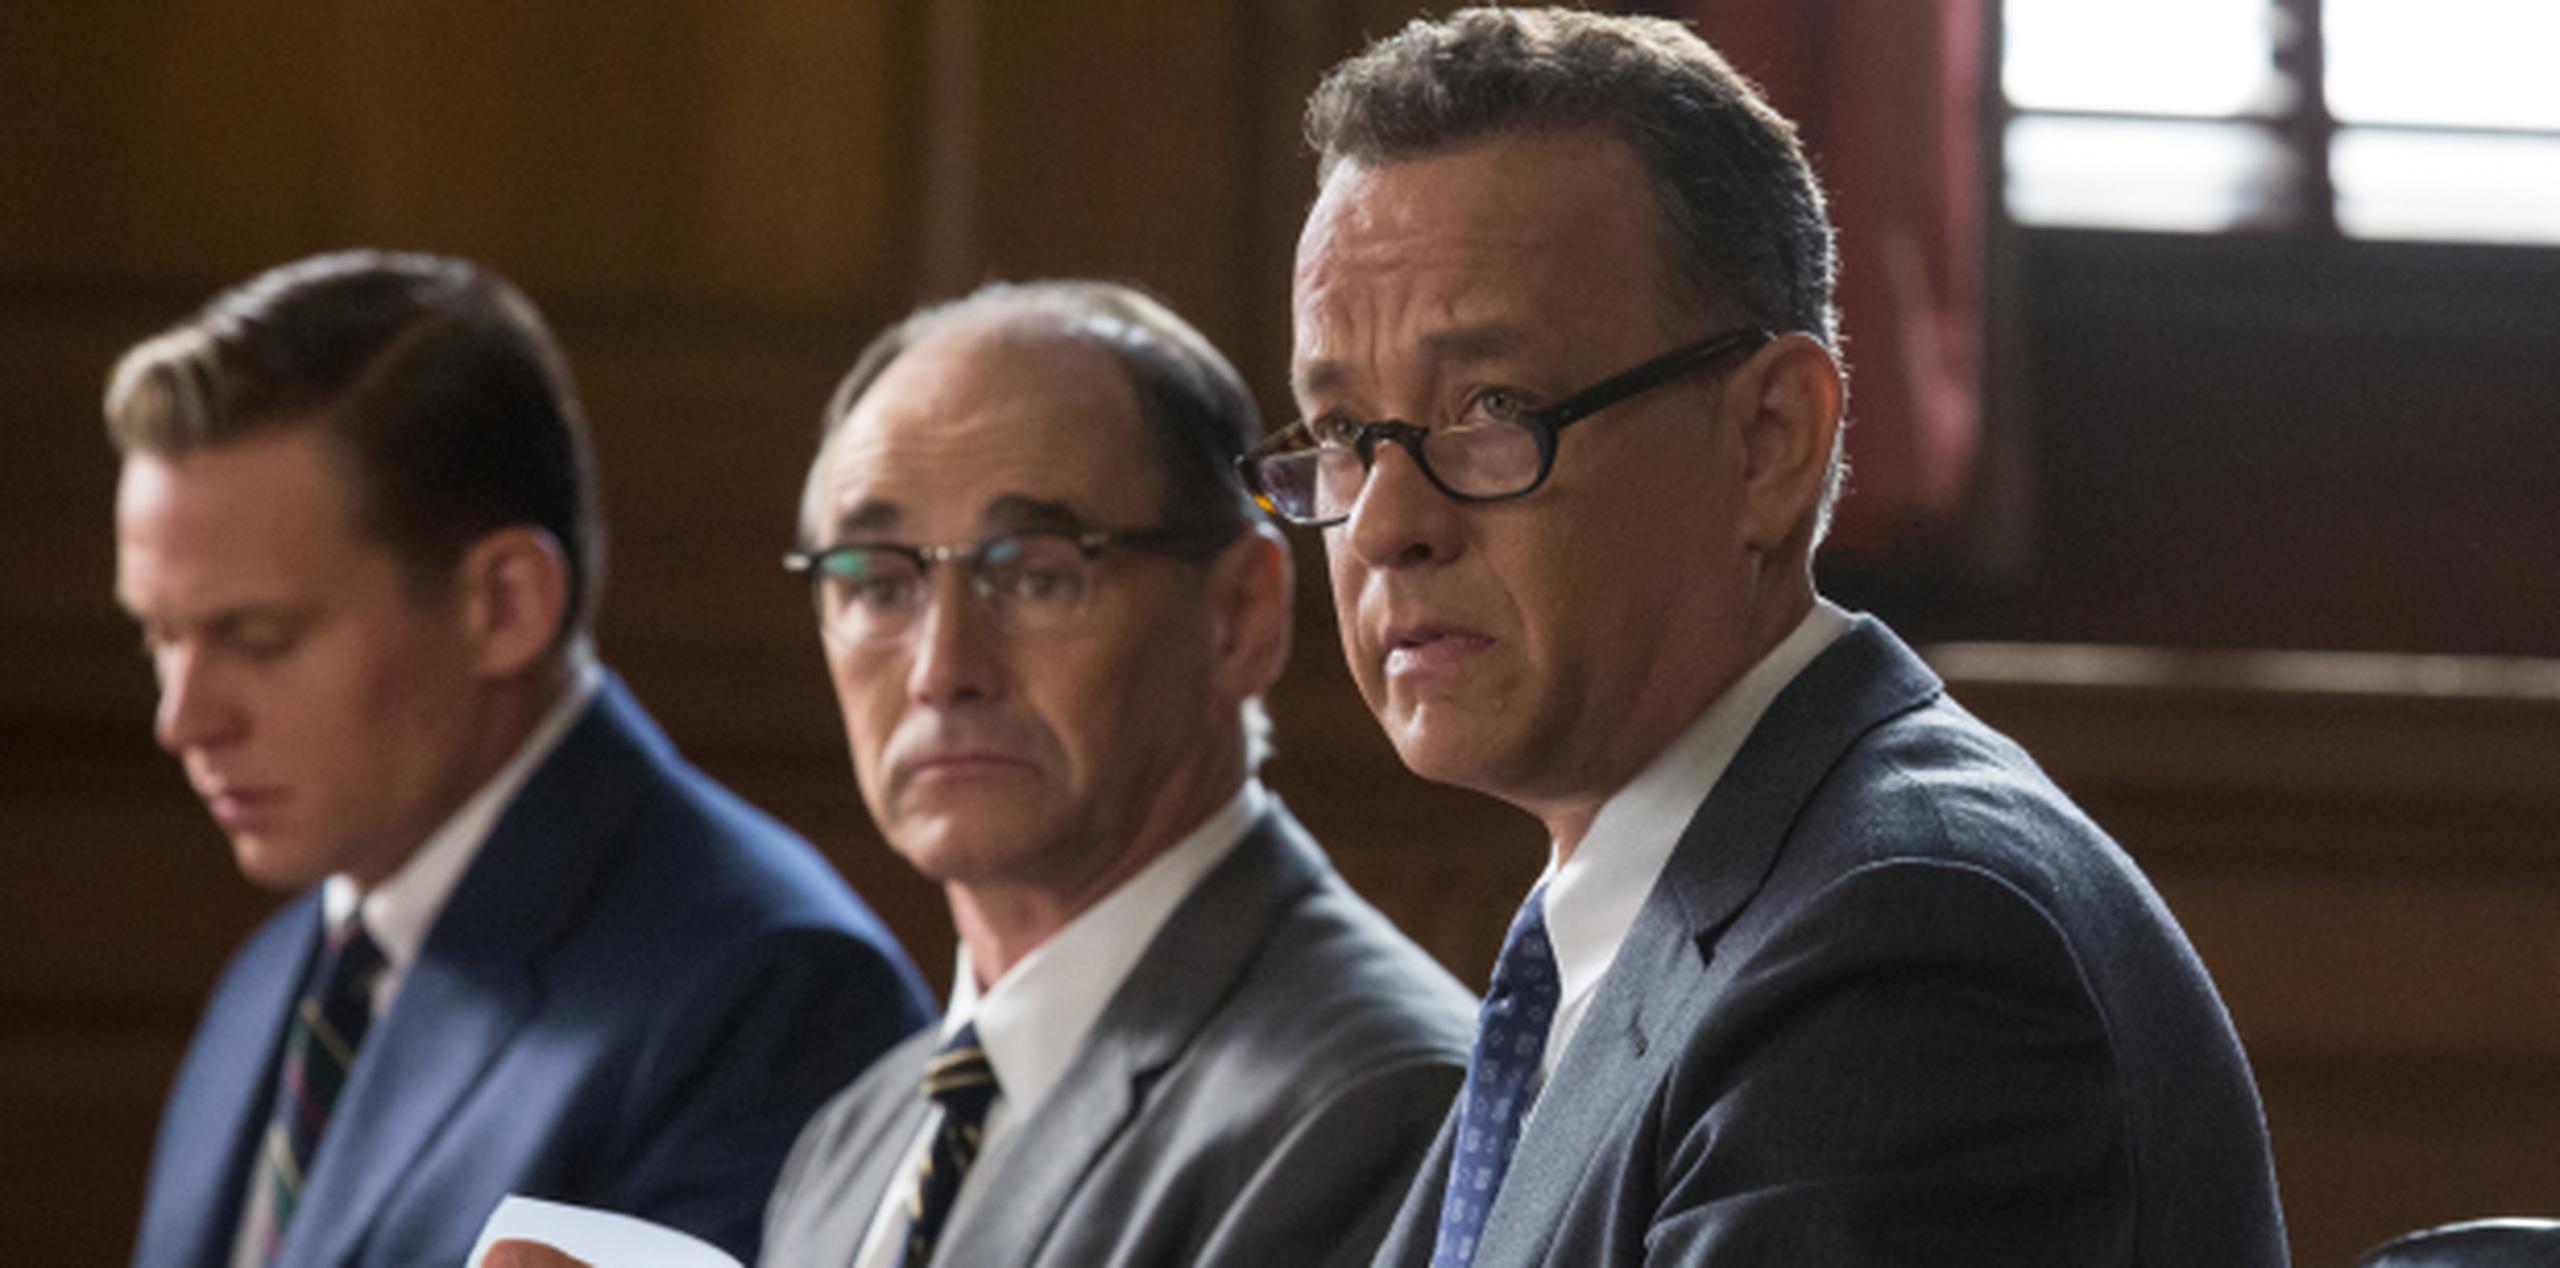 Hanks, a la derecha, con Mark Rylance y Billy Magnusson en una escena de la nominada al óscar "Bridge of Spies", se encuentra de visita en Chile. (AP)